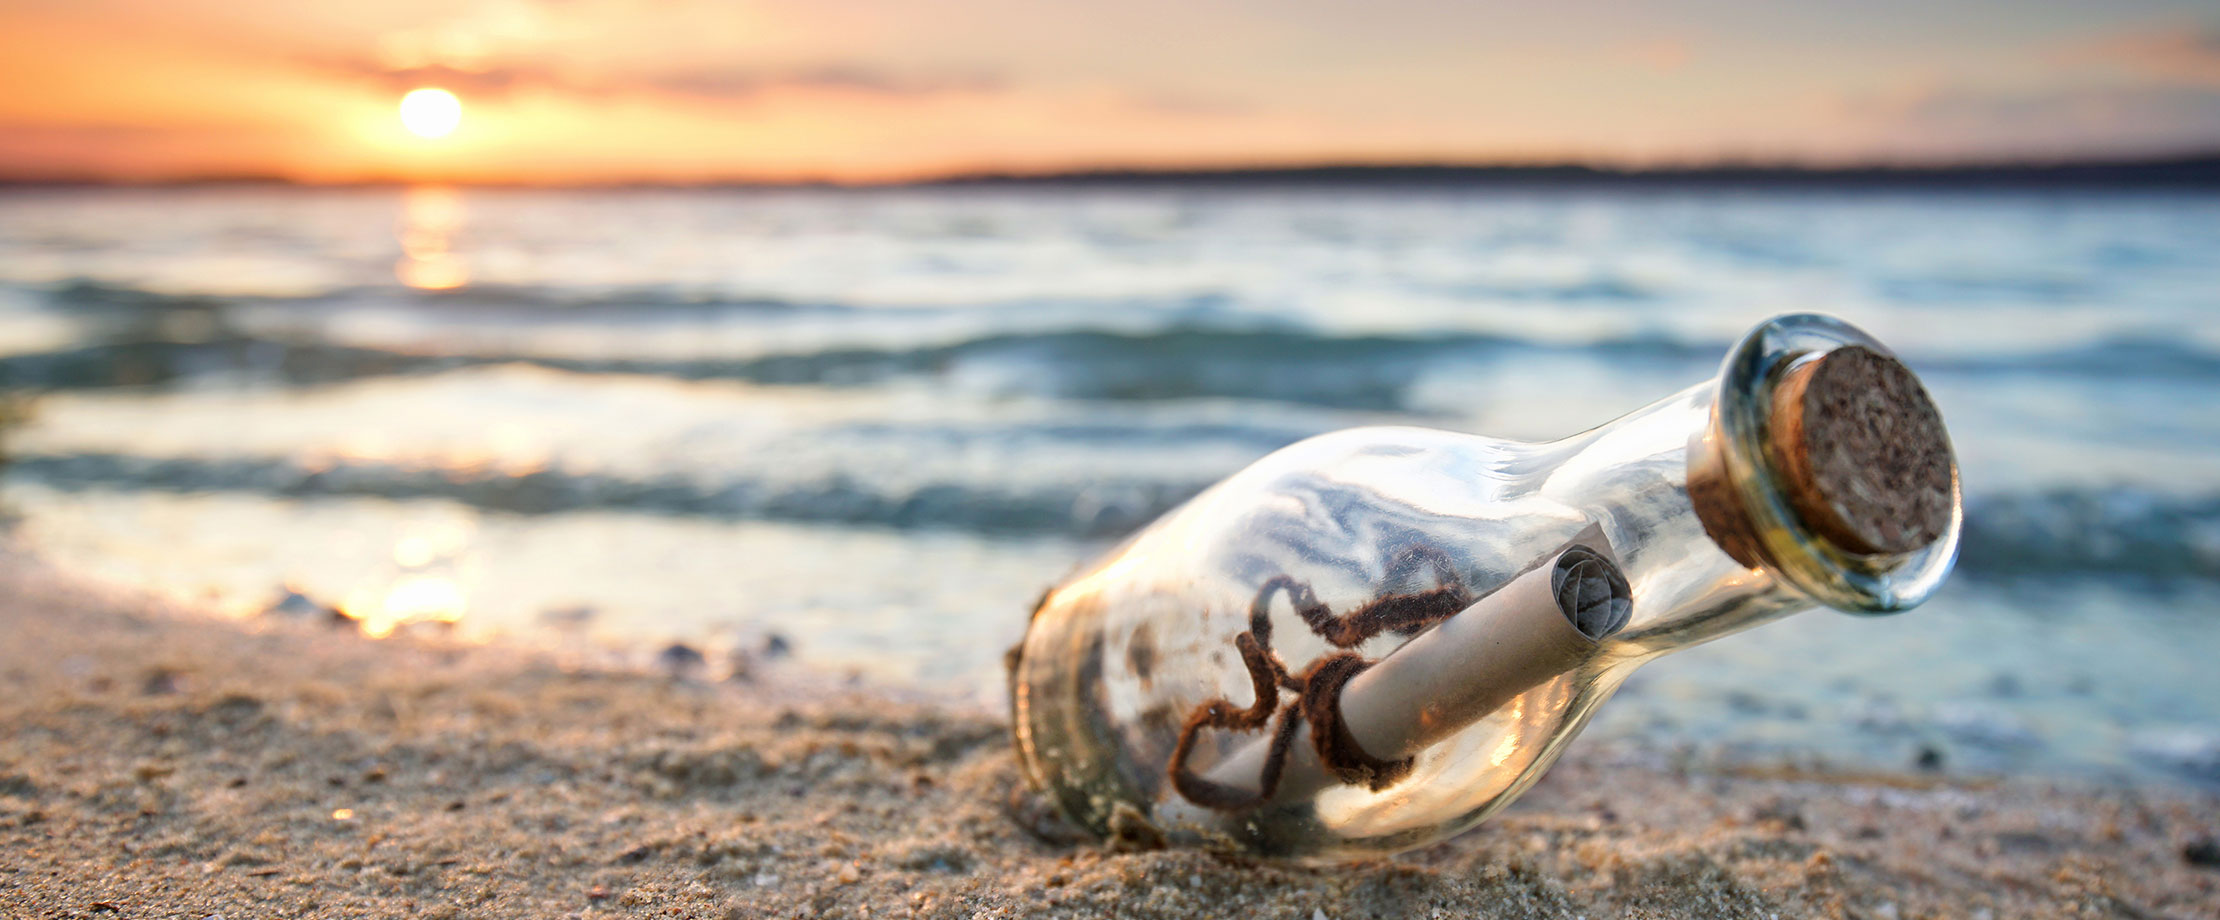 Eine Flaschenpost wurde am Strand angeschwemmt und liegt im Sand. Im Hintergrund geht die Sonne hinter dem Meer unter. Der Wellengang ist sanft.